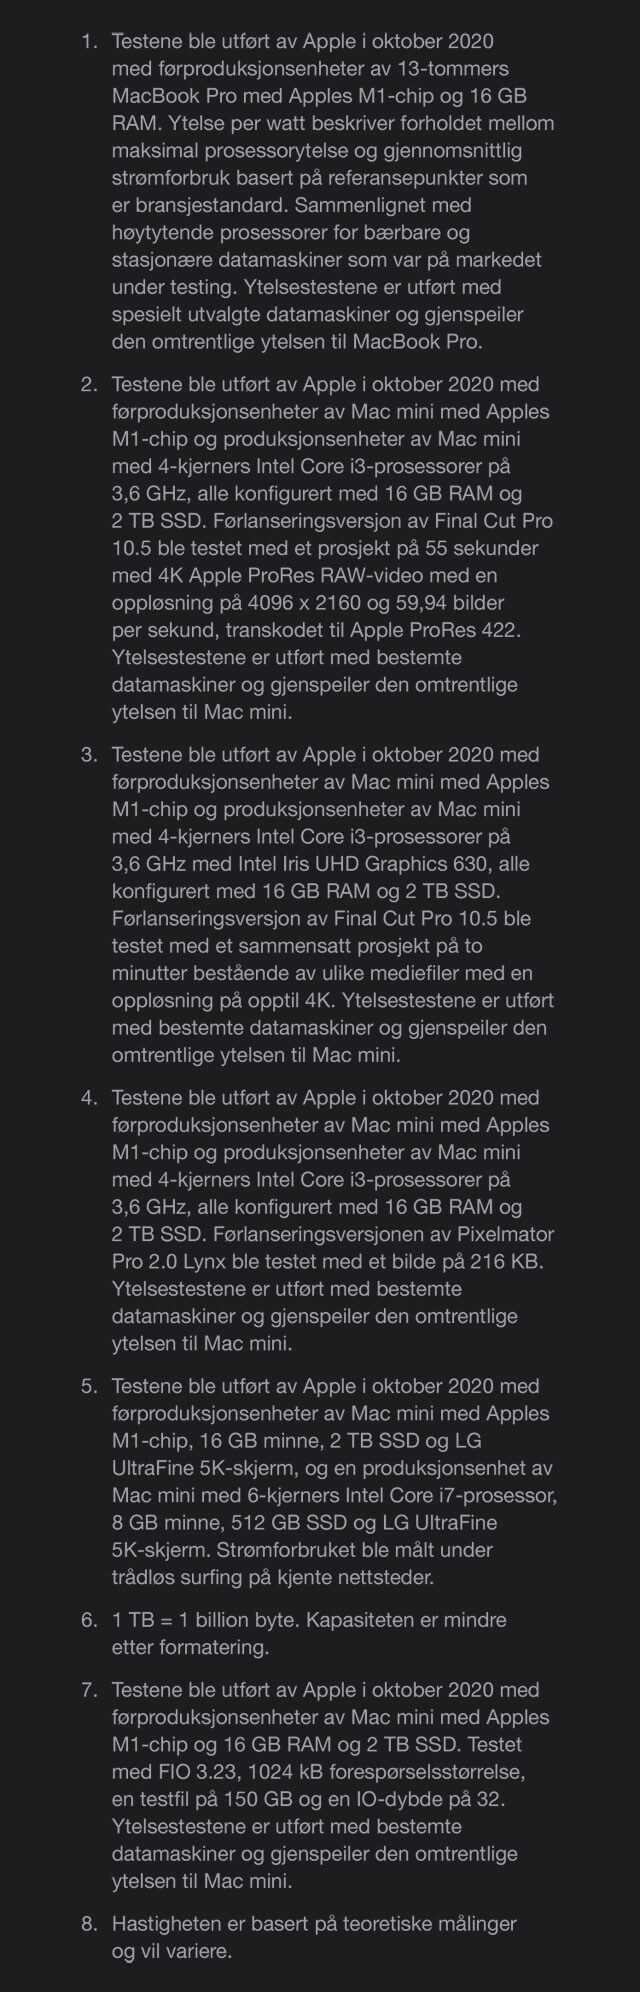 Mac mini med Apple M1-chippen